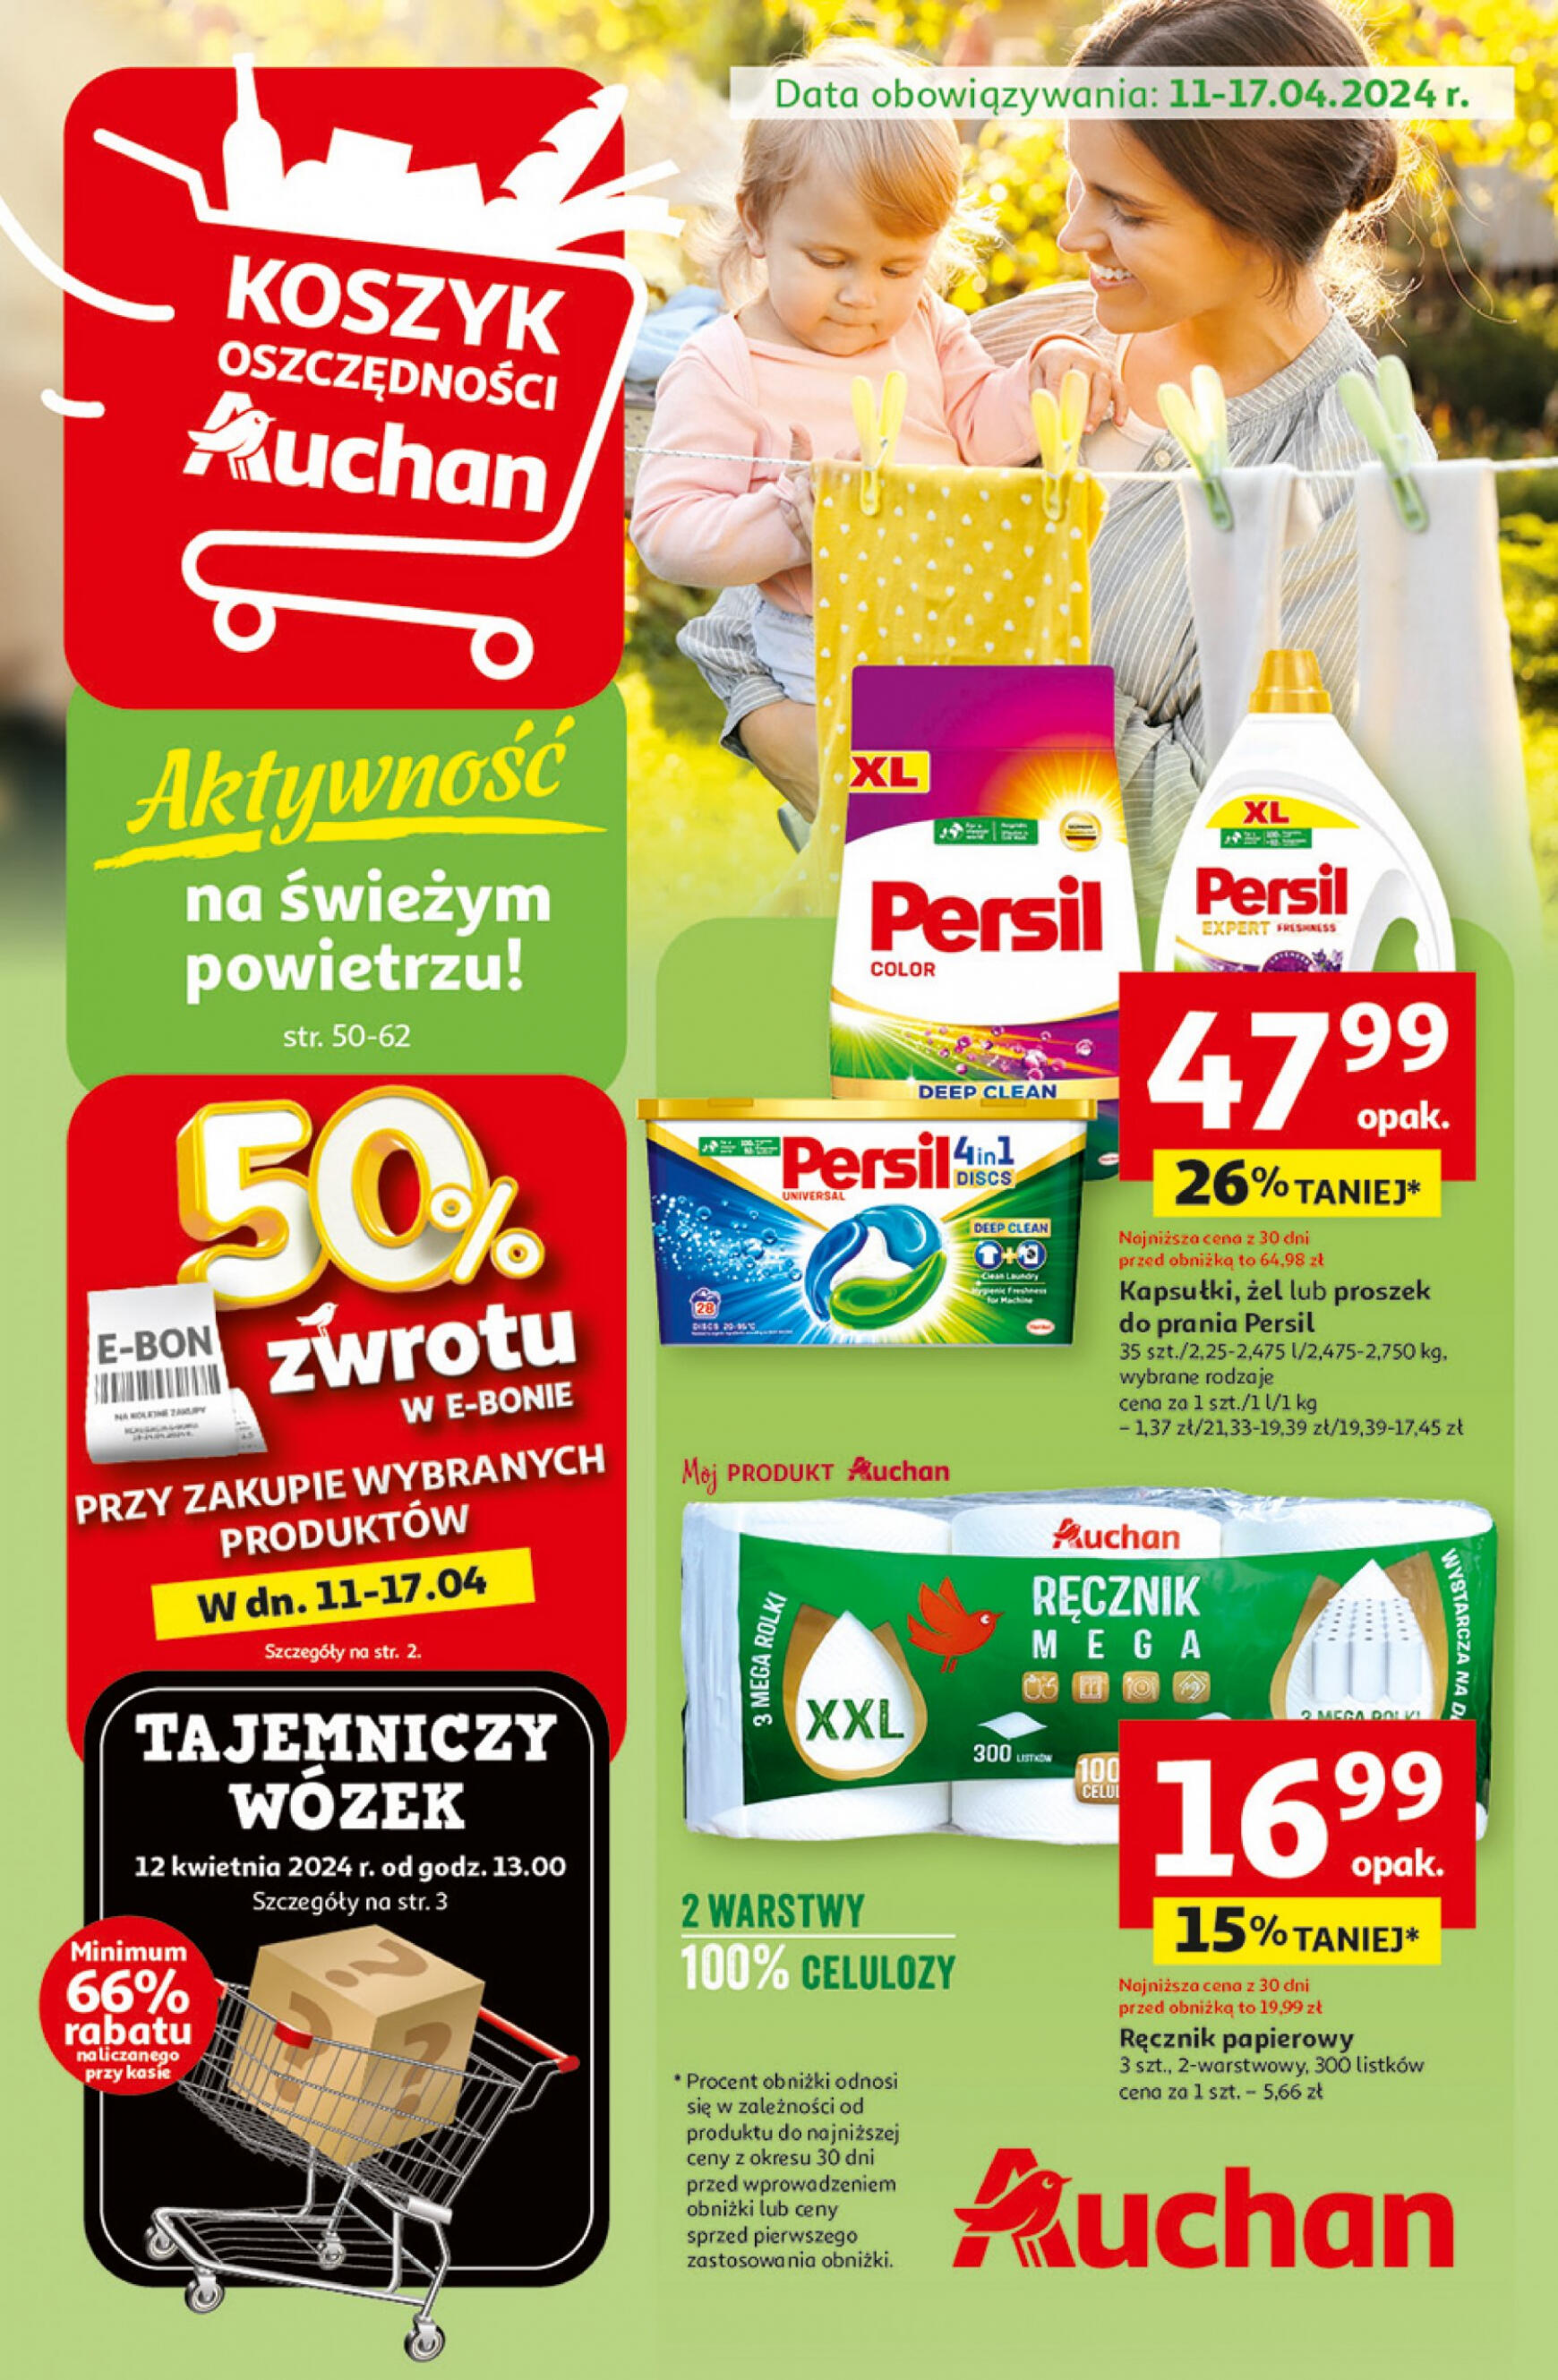 auchan - Hipermarket Auchan - Gazetka Aktywność na świeżym powietrzu! gazetka aktualna ważna od 11.04. - 17.04. - page: 1